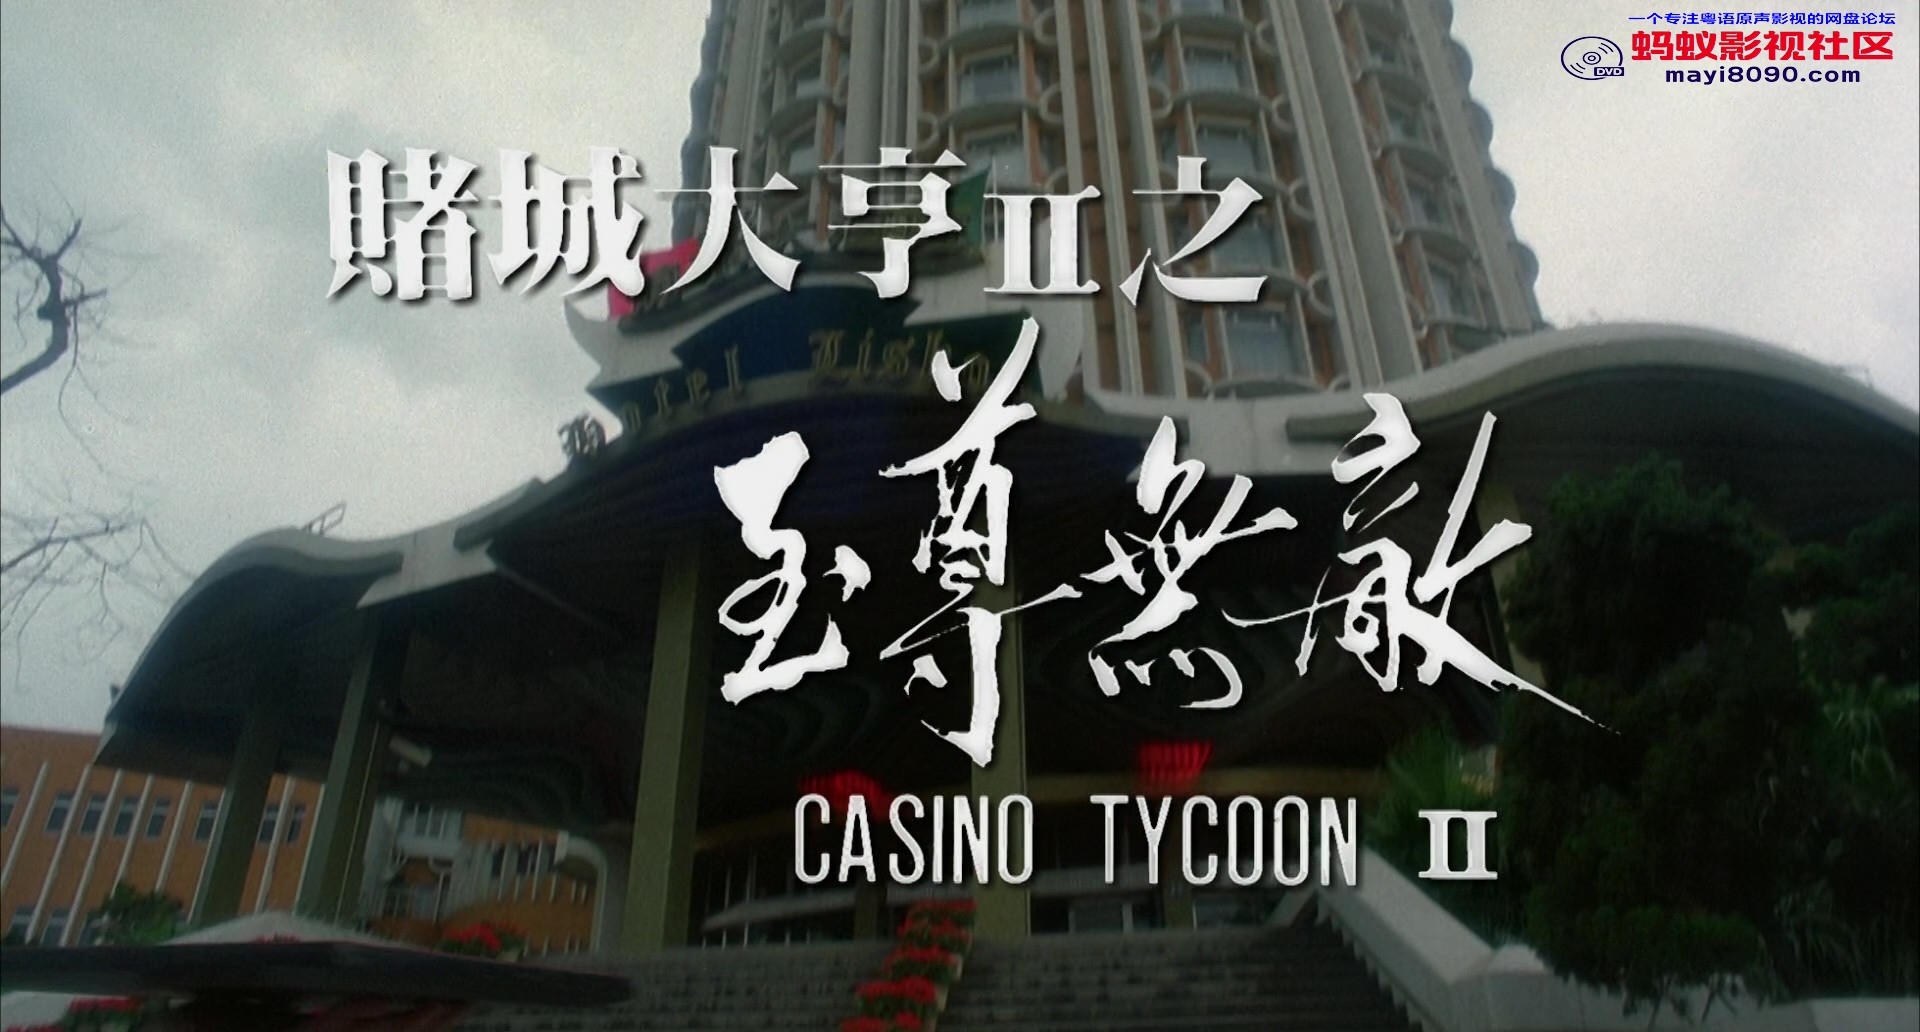 Casino.Tycoon.II.1992.BluRay.1080p.2Audio.DTS-HD.MA.2.0.x265.10bit-ALT.mkv_20231.jpg